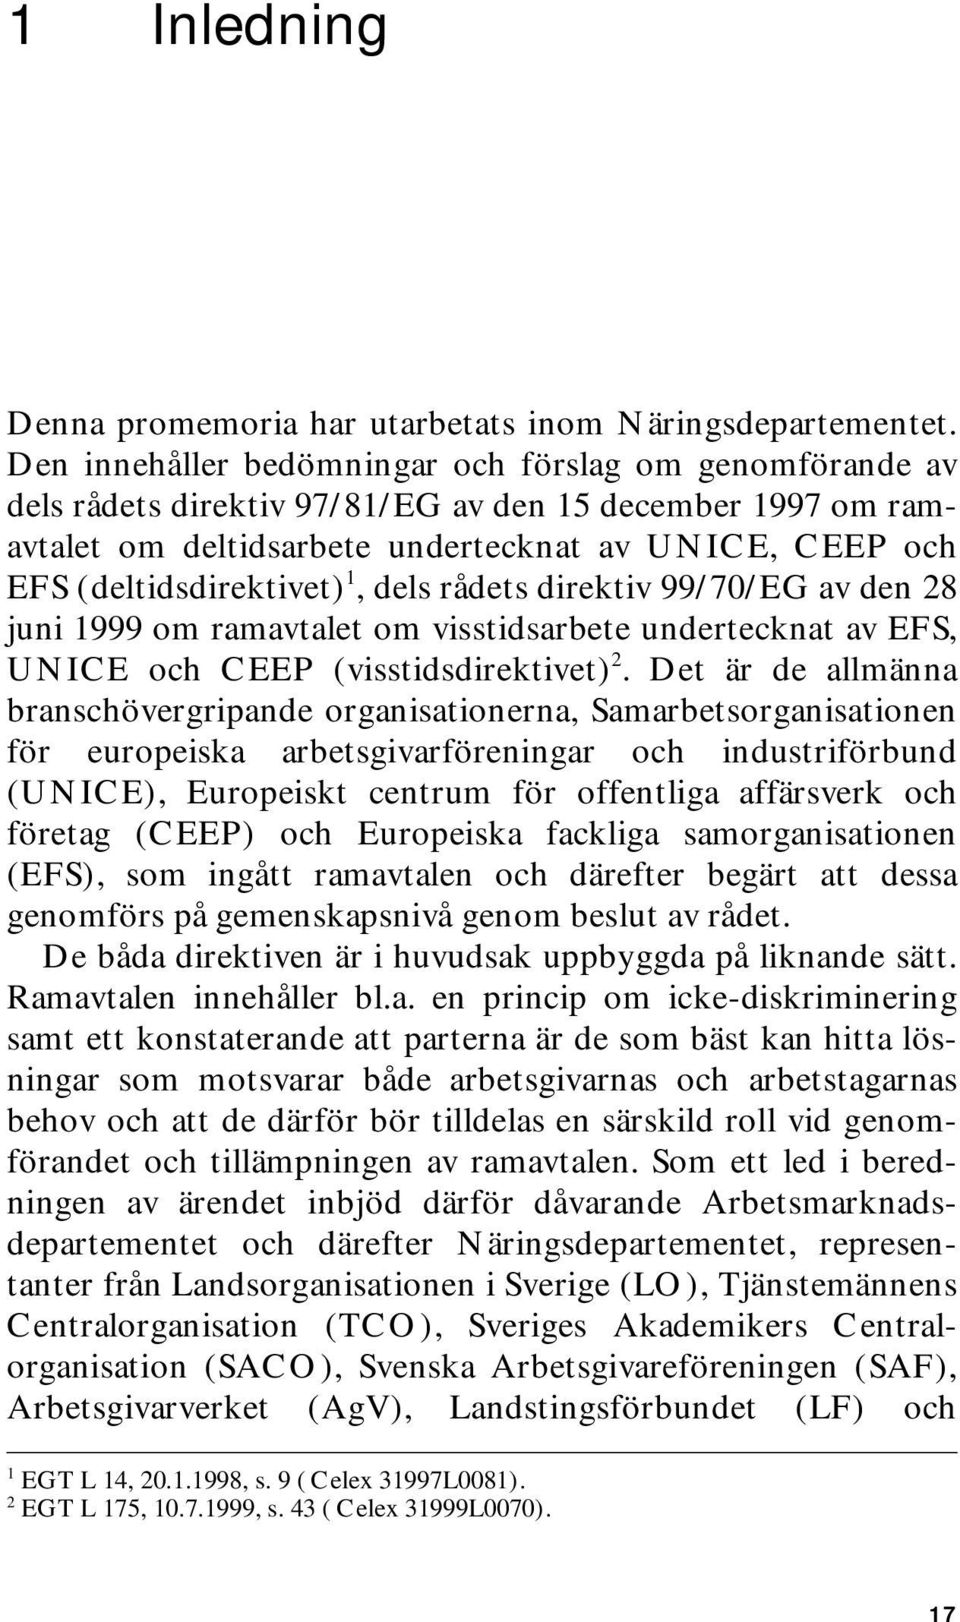 1, dels rådets direktiv 99/70/EG av den 28 juni 1999 om ramavtalet om visstidsarbete undertecknat av EFS, UNICE och CEEP (visstidsdirektivet) 2.